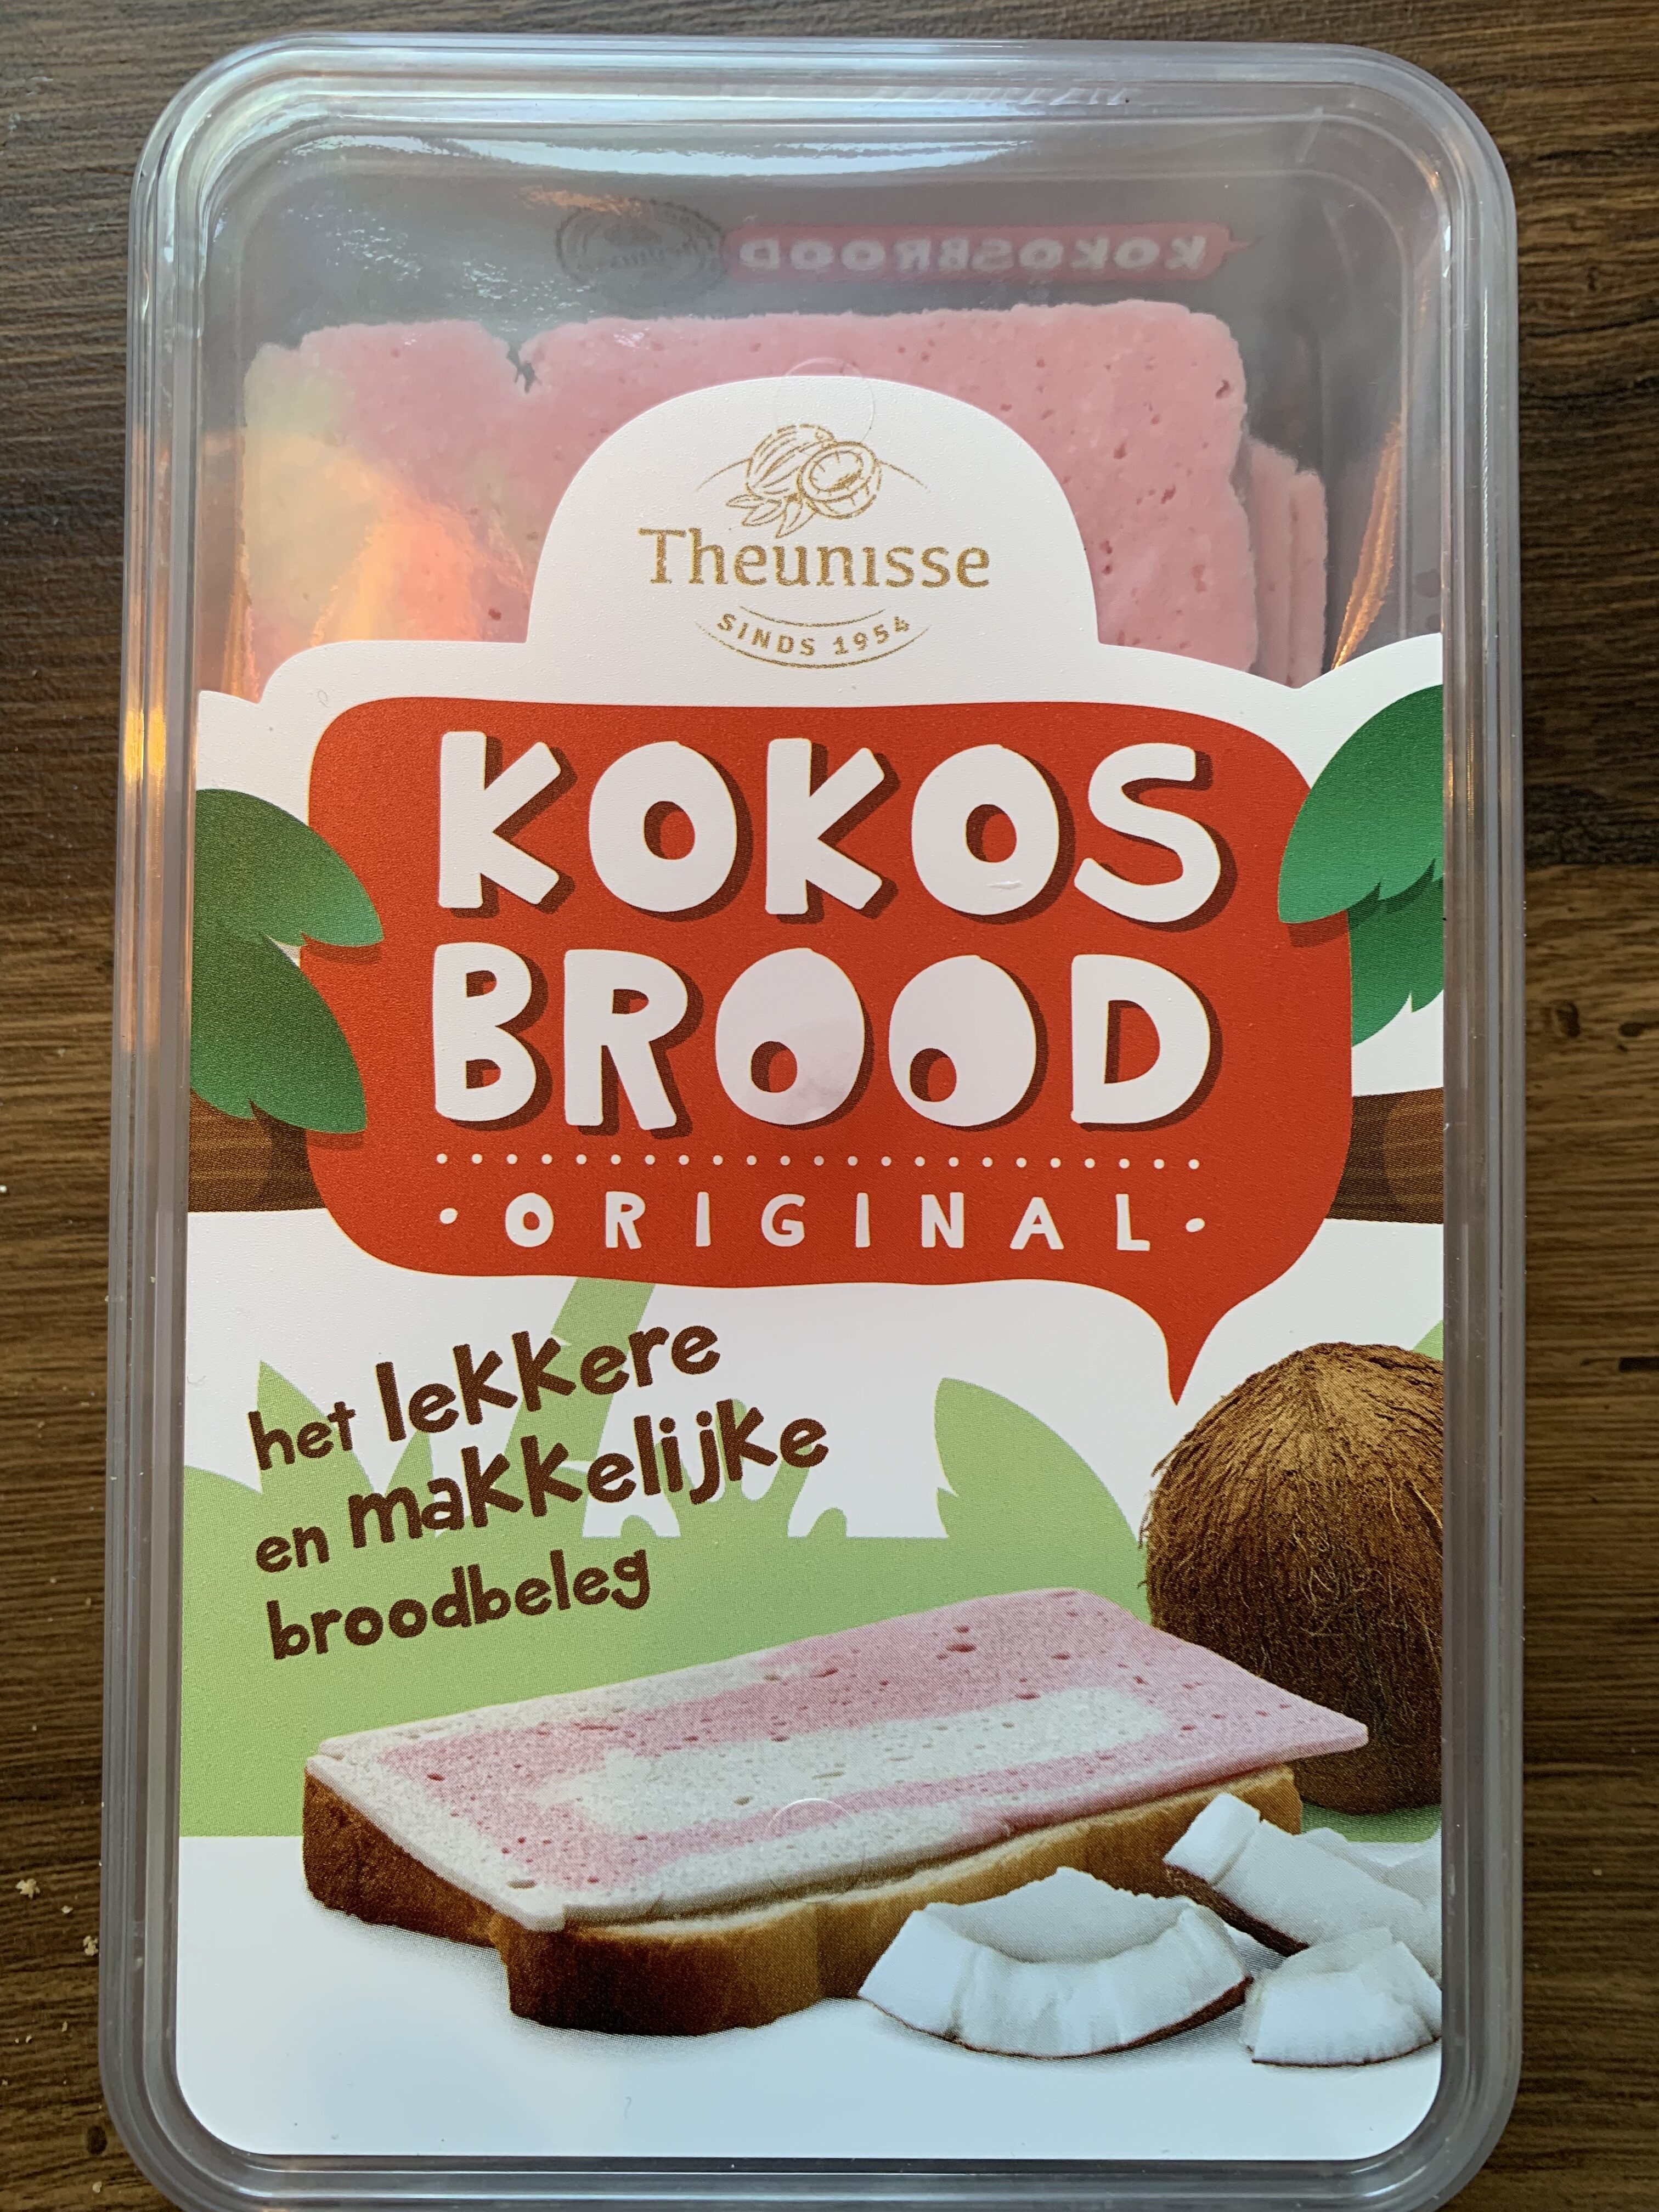 Kokosbrood - Product